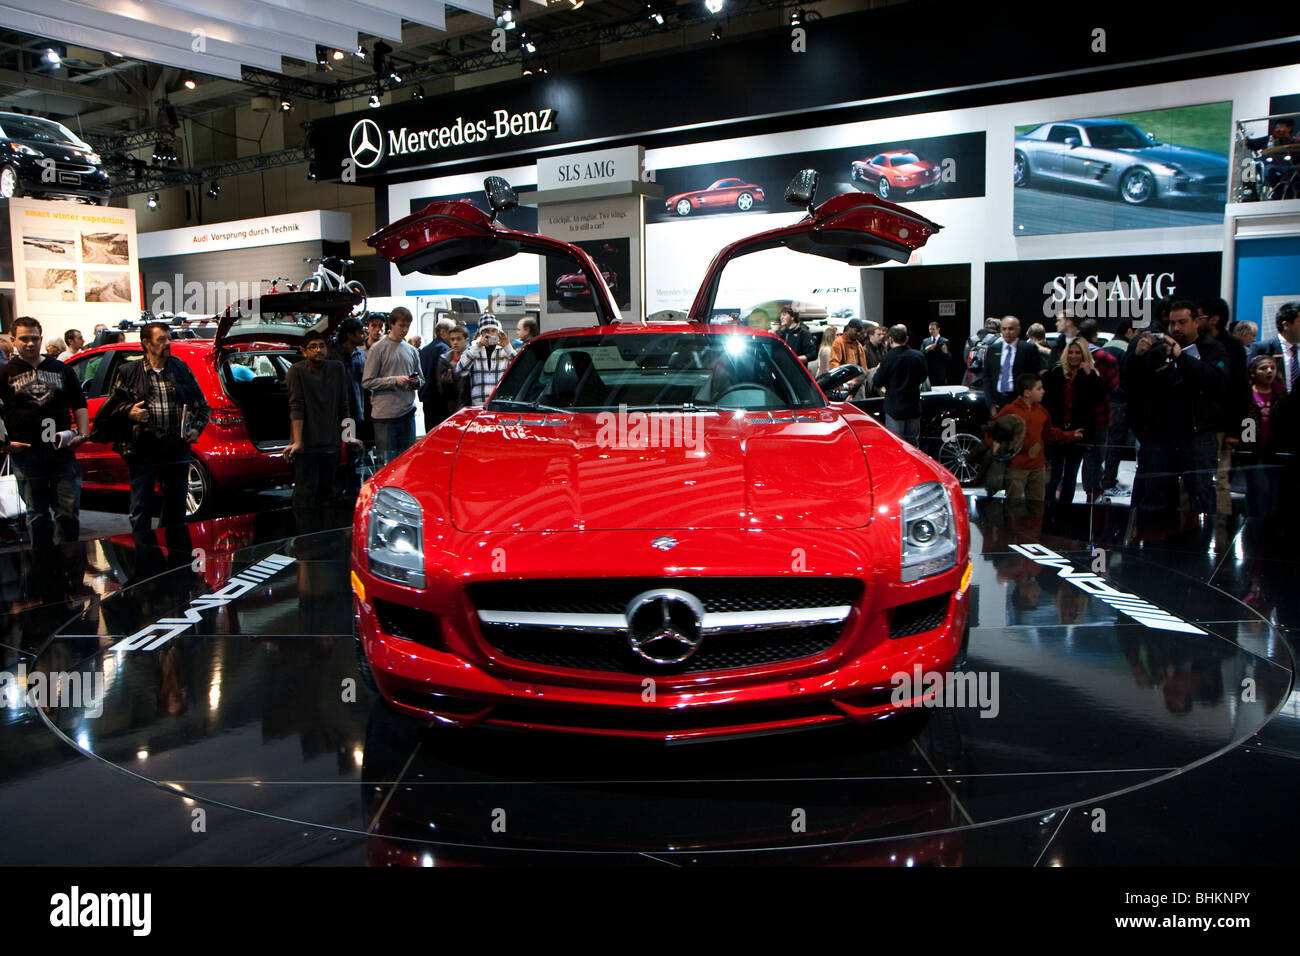 'Mercedes Benz 'Mercedes-Benz' 'SLS AMG" rosso Foto Stock